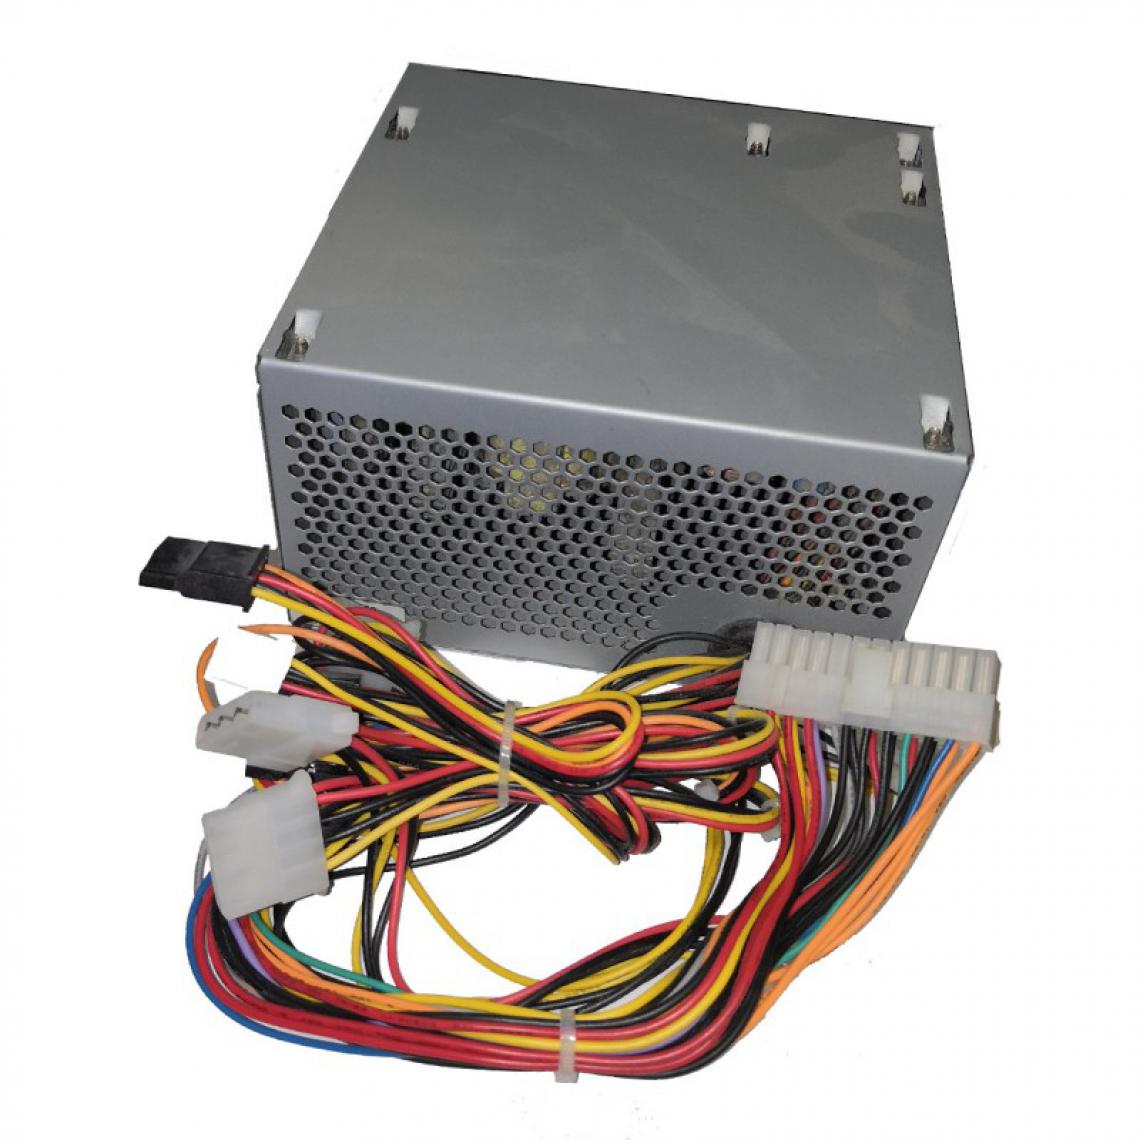 Powerstar - Alimentation PC POWER STAR ALIM-ATX-480 480W SATA Molex Floppy - Alimentation modulaire